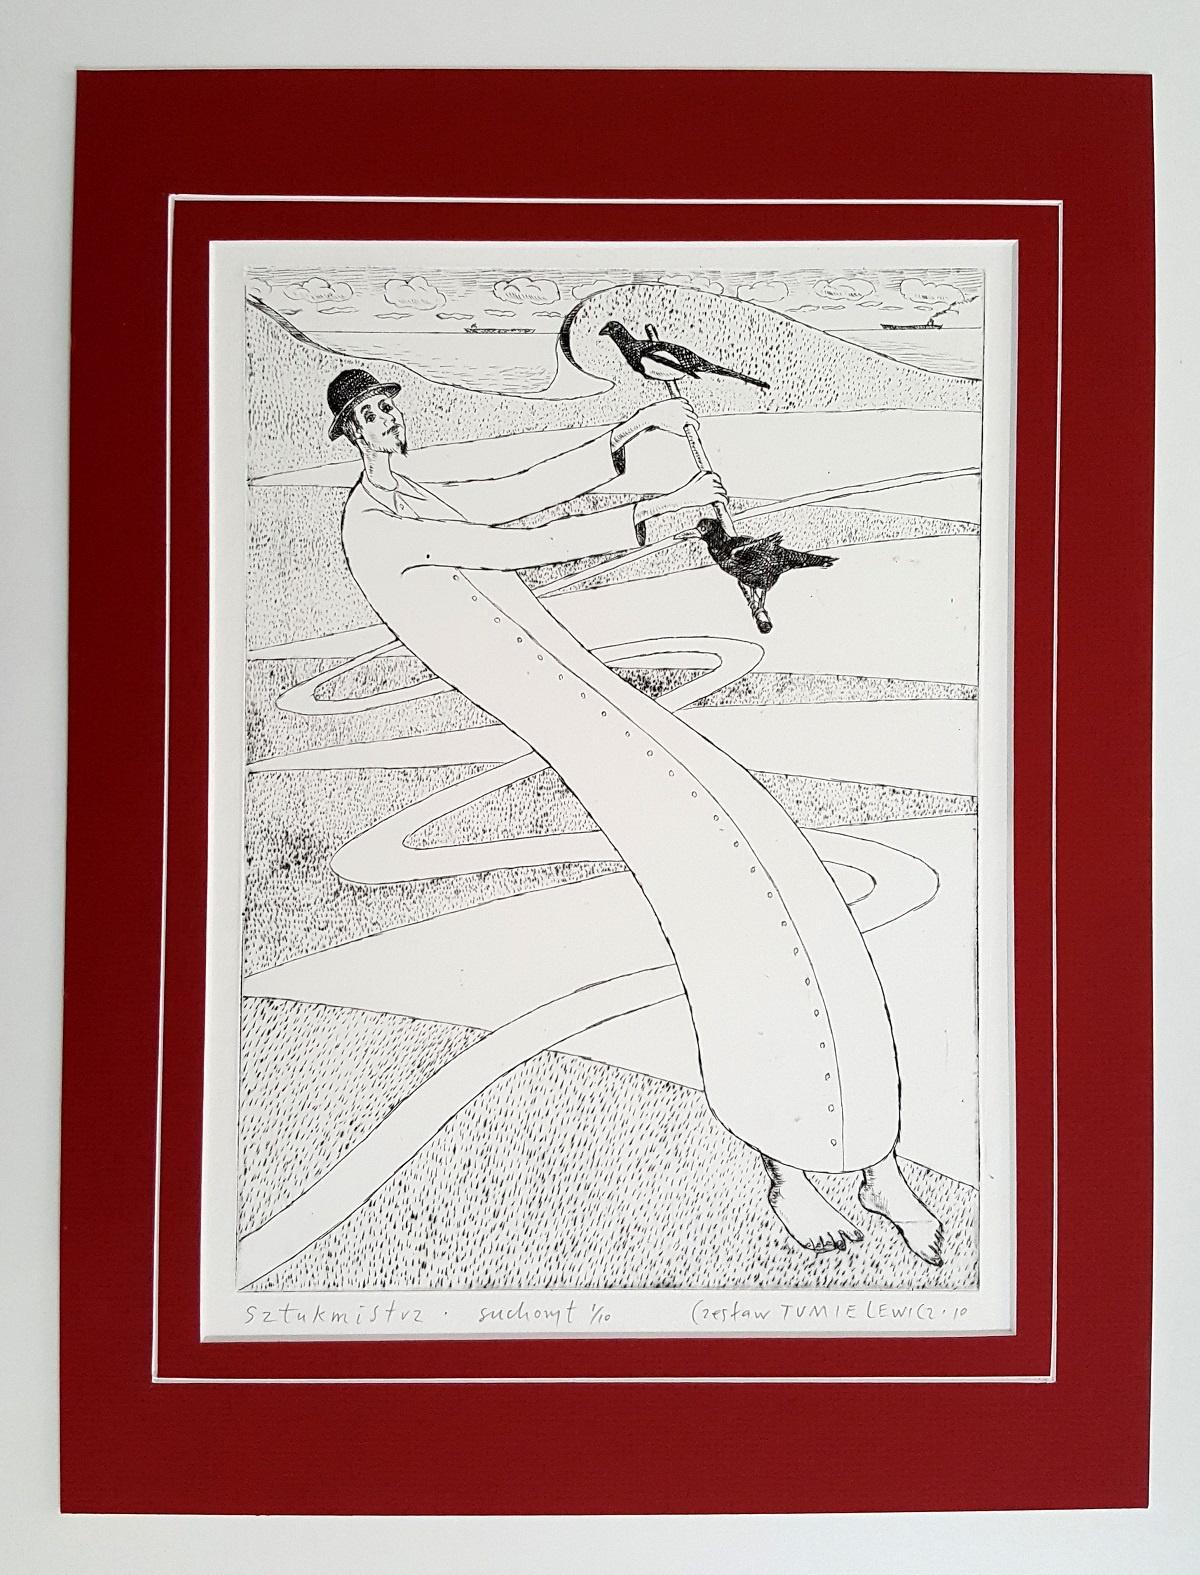 Mountebank – 21. Jahrhundert, Zeitgenössischer figurativer Drypoint-Radierungsdruck – Print von Czeslaw Tumielewicz